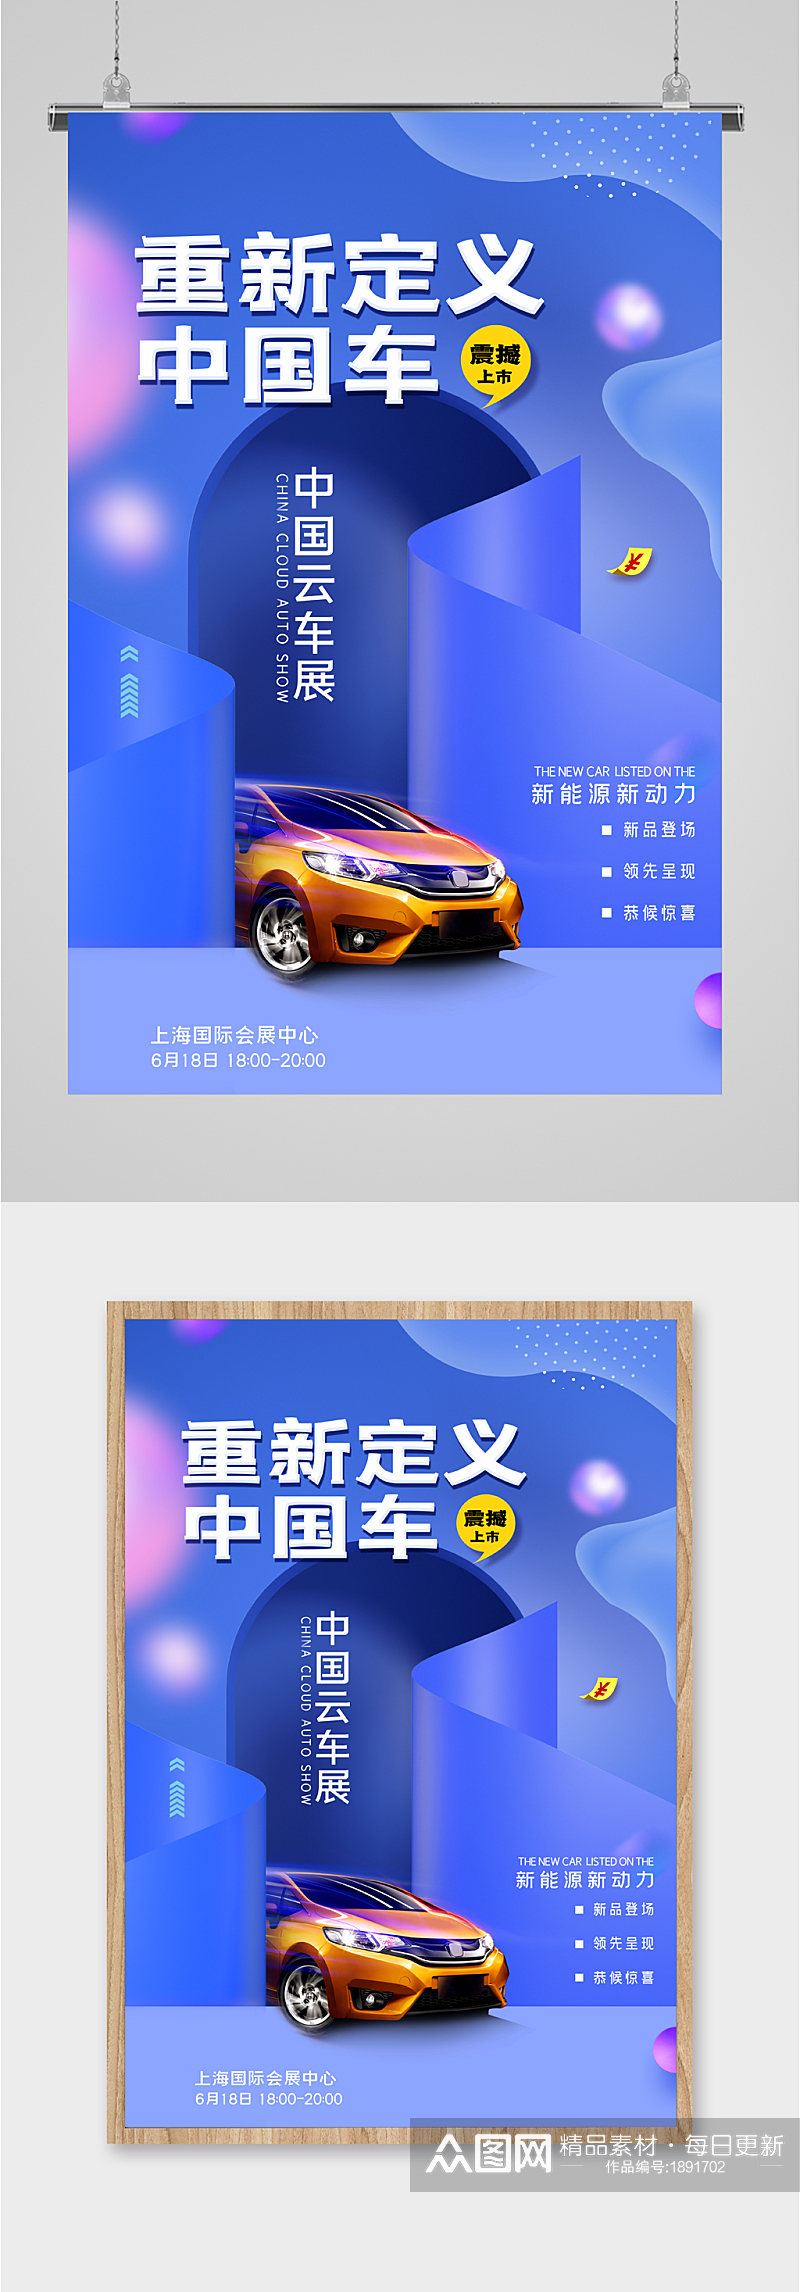 中国汽车展览会海报素材